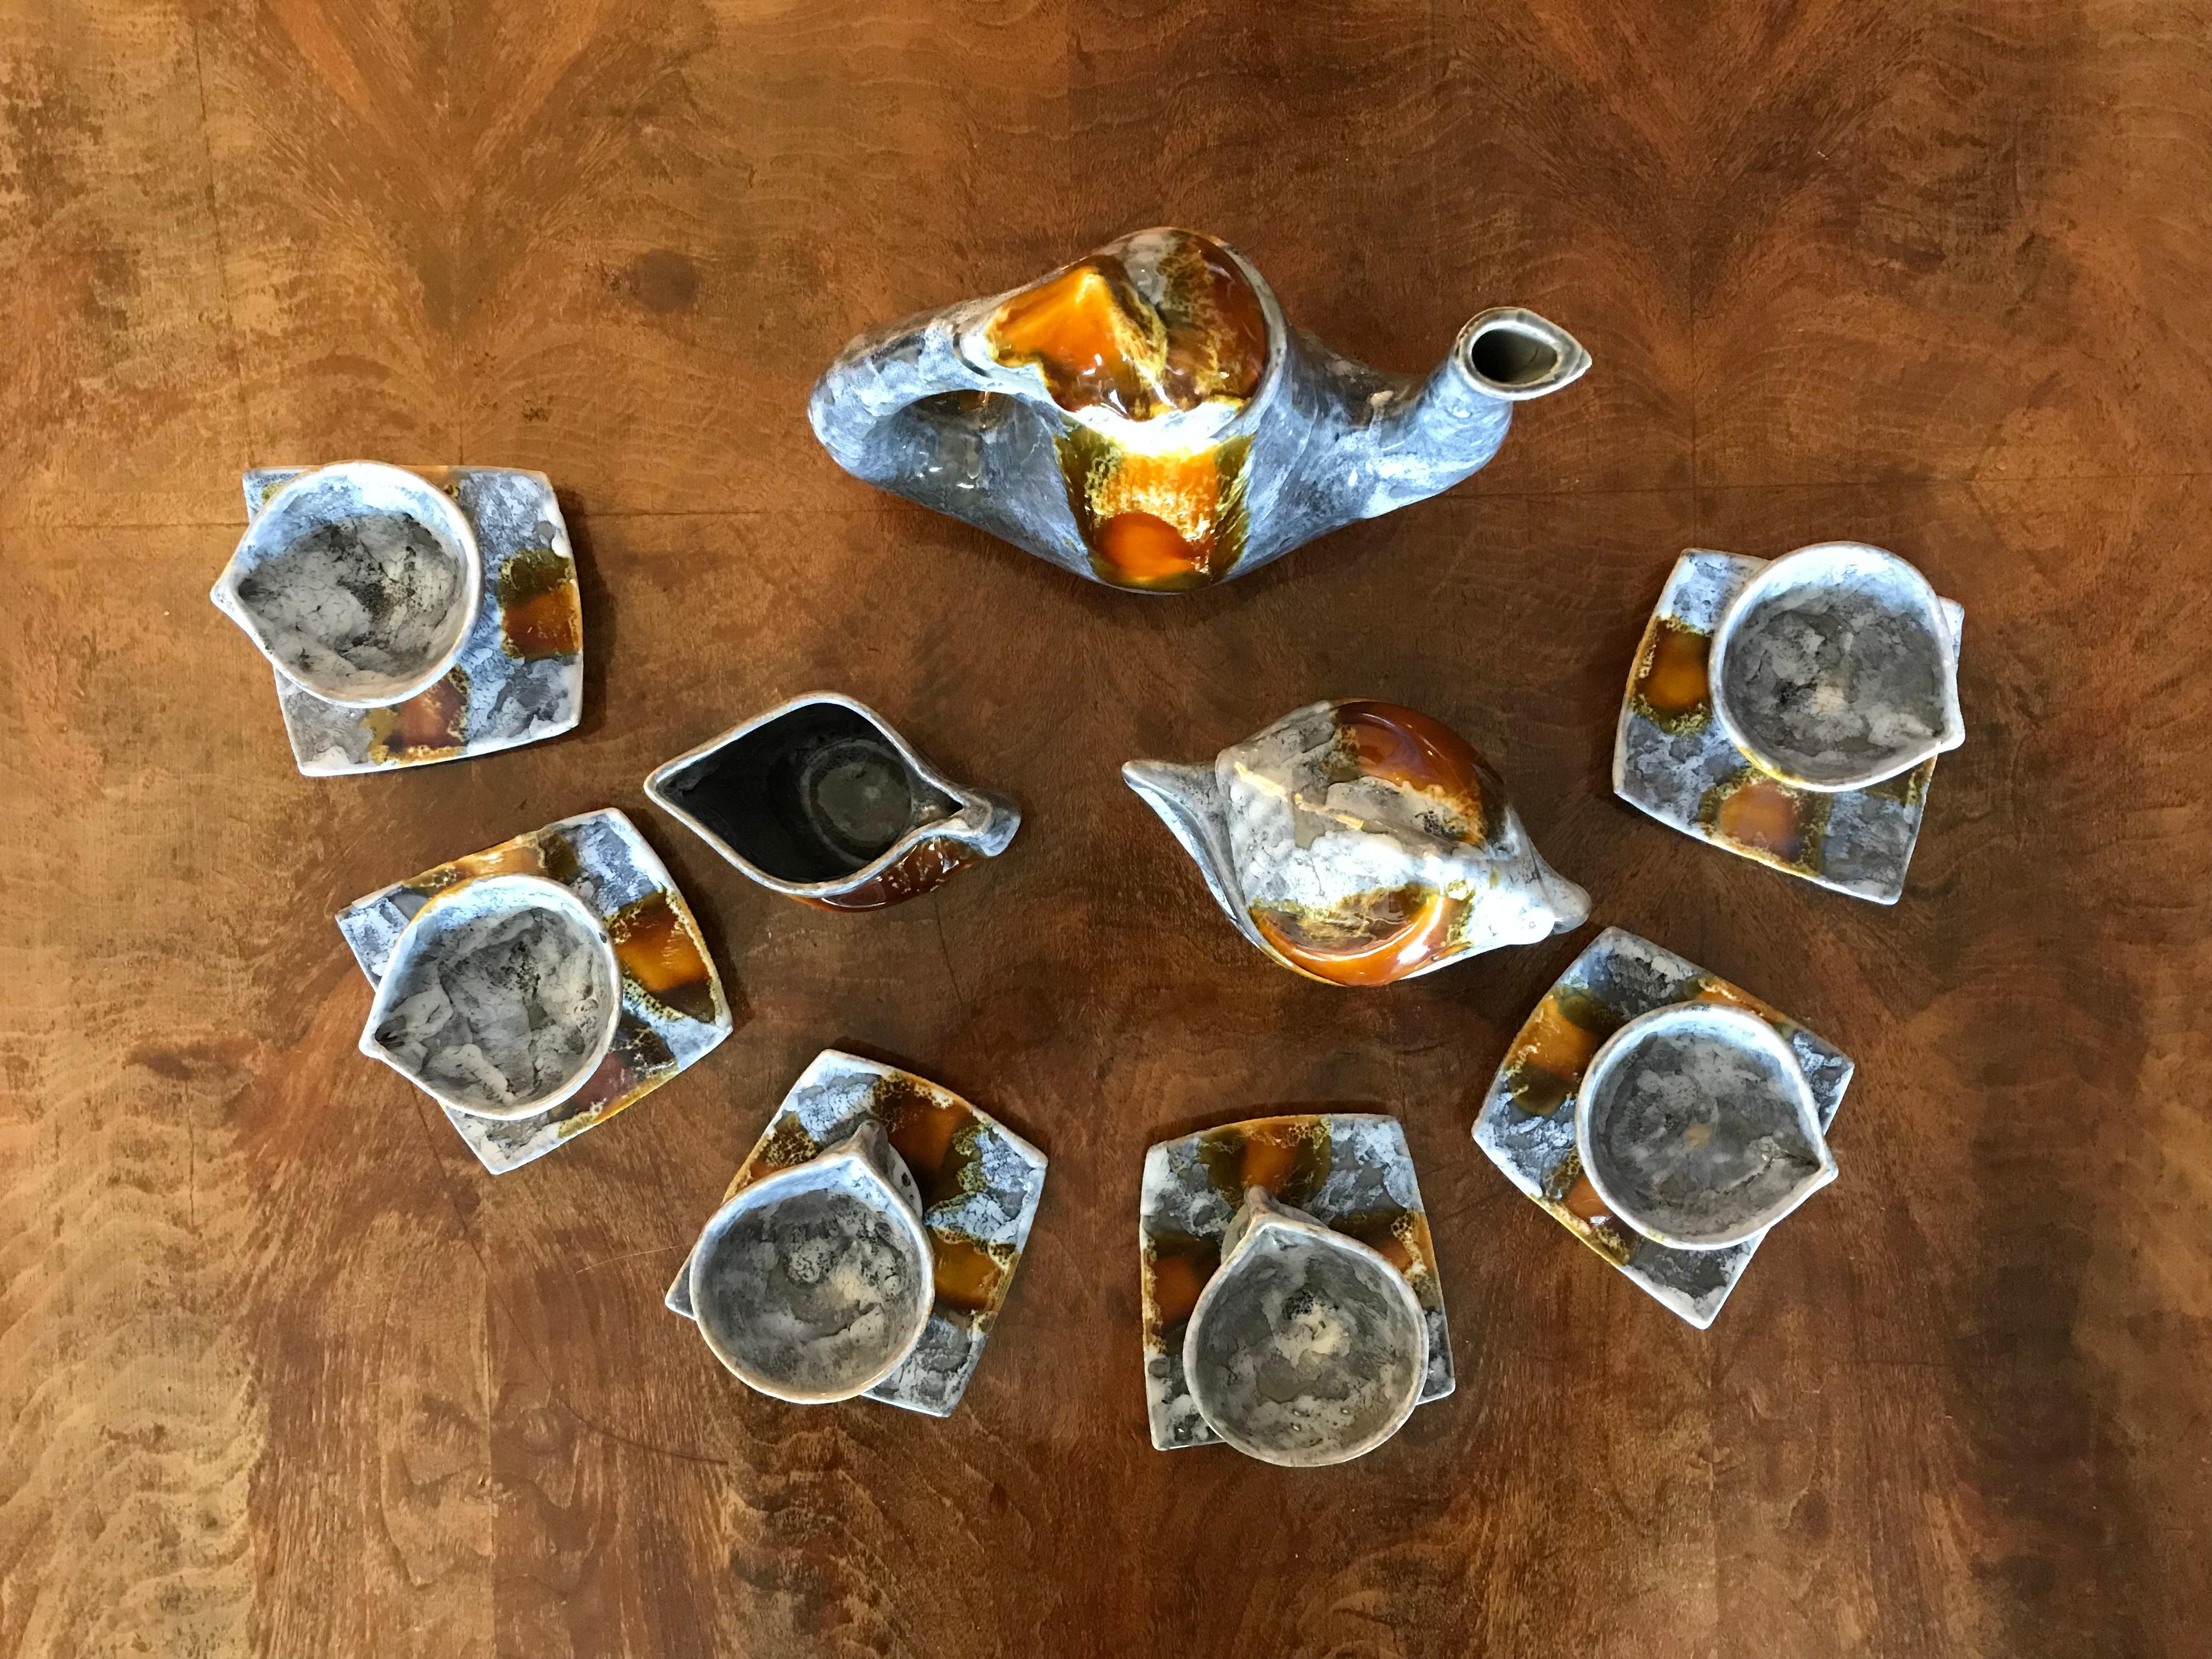 Original signiert Vallauris Französisch Mid-Century Modern Tassen kreatives Design voller Kaffee-Set in Keramik gemacht.
6 Tassen Durchmesser 8-8,5cm H 7 cm
6 Untertassen L 11 cm x L 11,5 cm x P 2 cm
Krug H 26 cm x L 24 cm x L 9,5 cm und sein